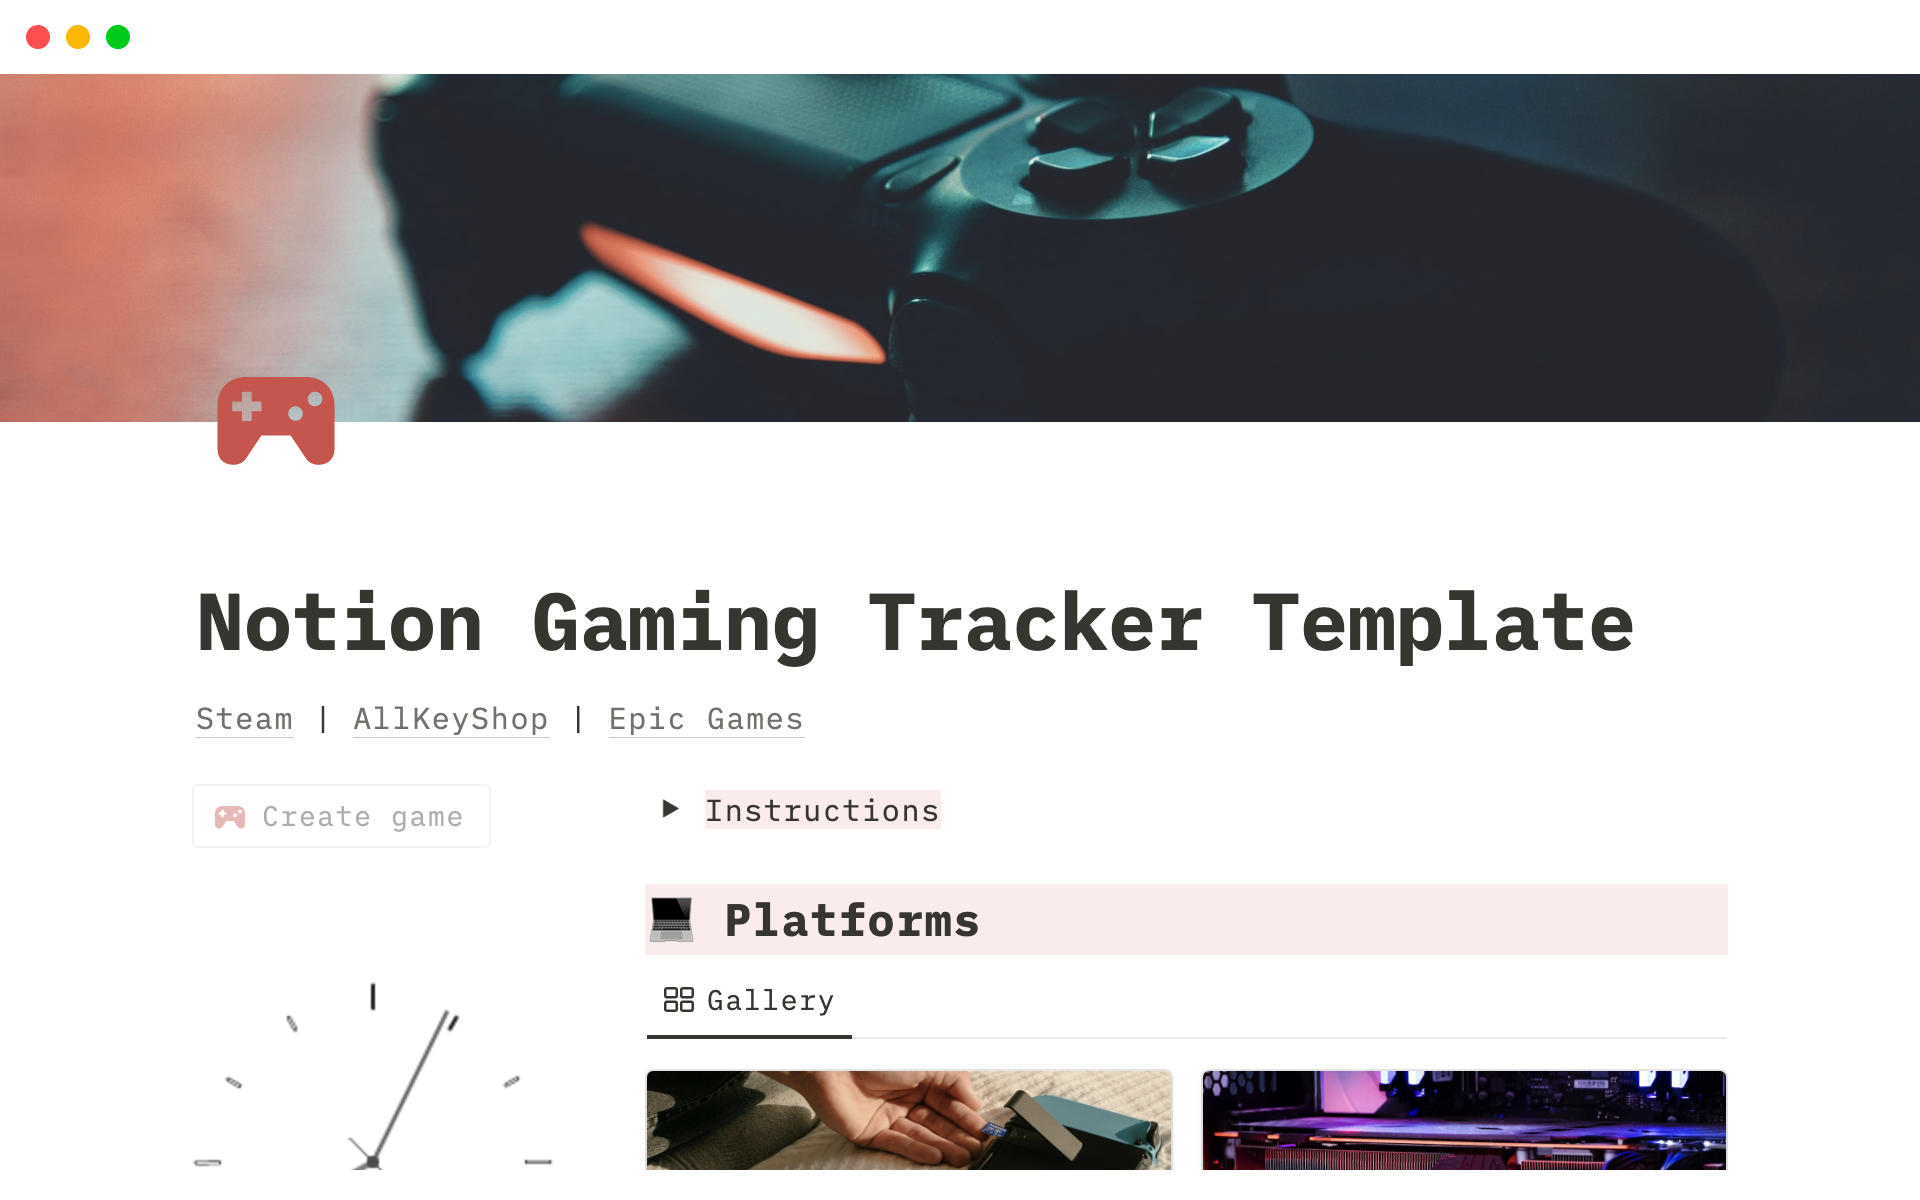 Uma prévia do modelo para Notion Gaming Tracker Template